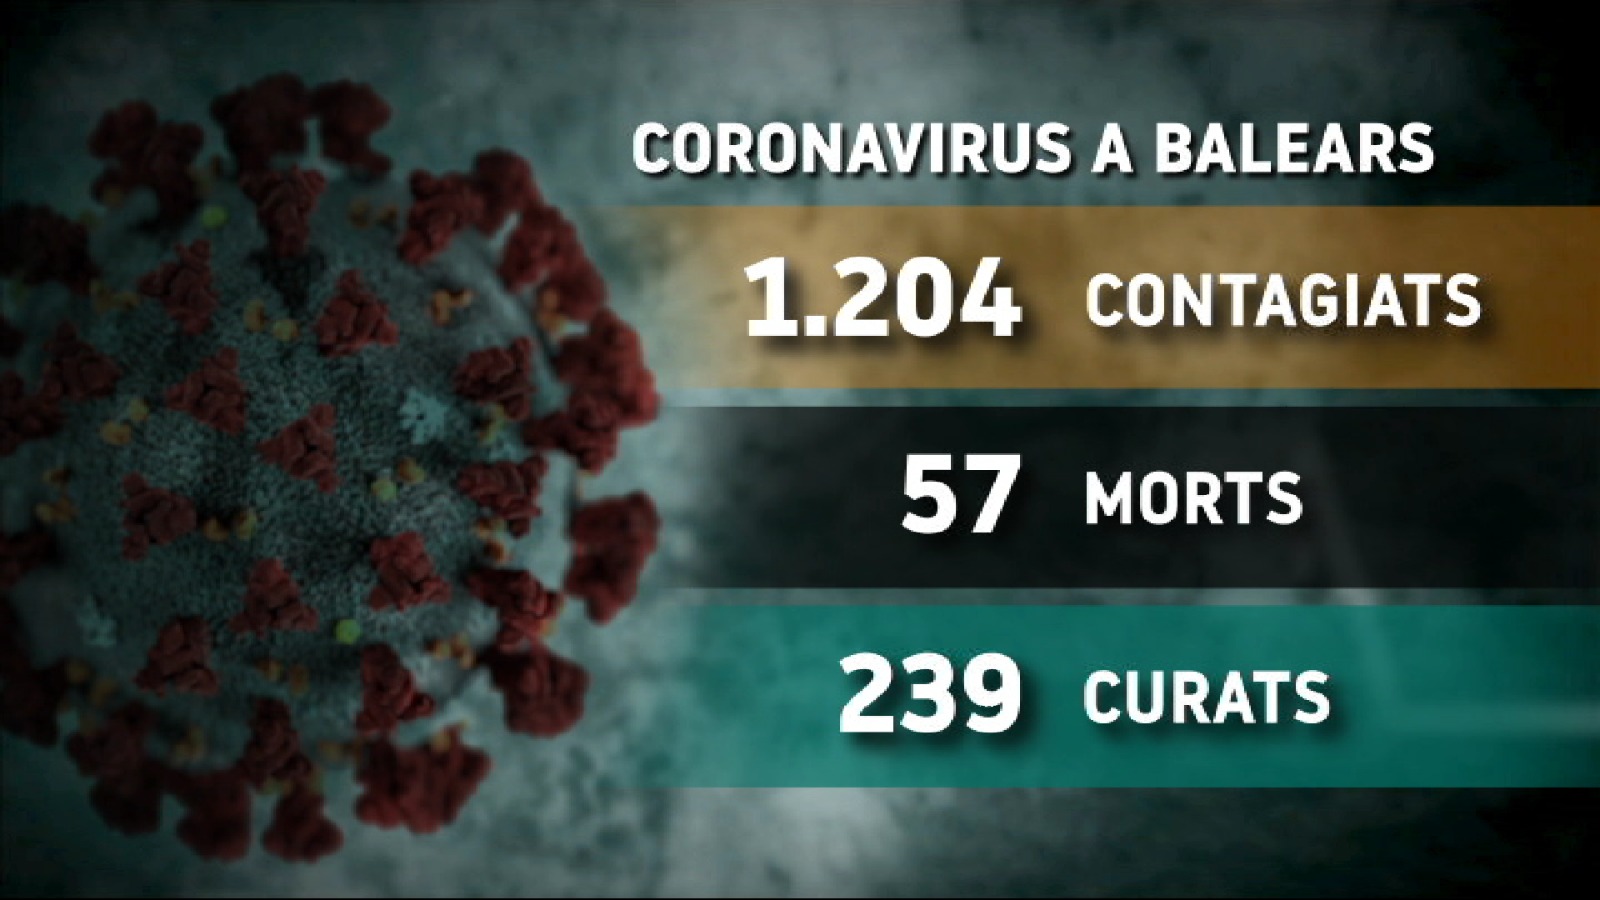 Les darreres dades: 57 morts amb coronavirus a les Balears